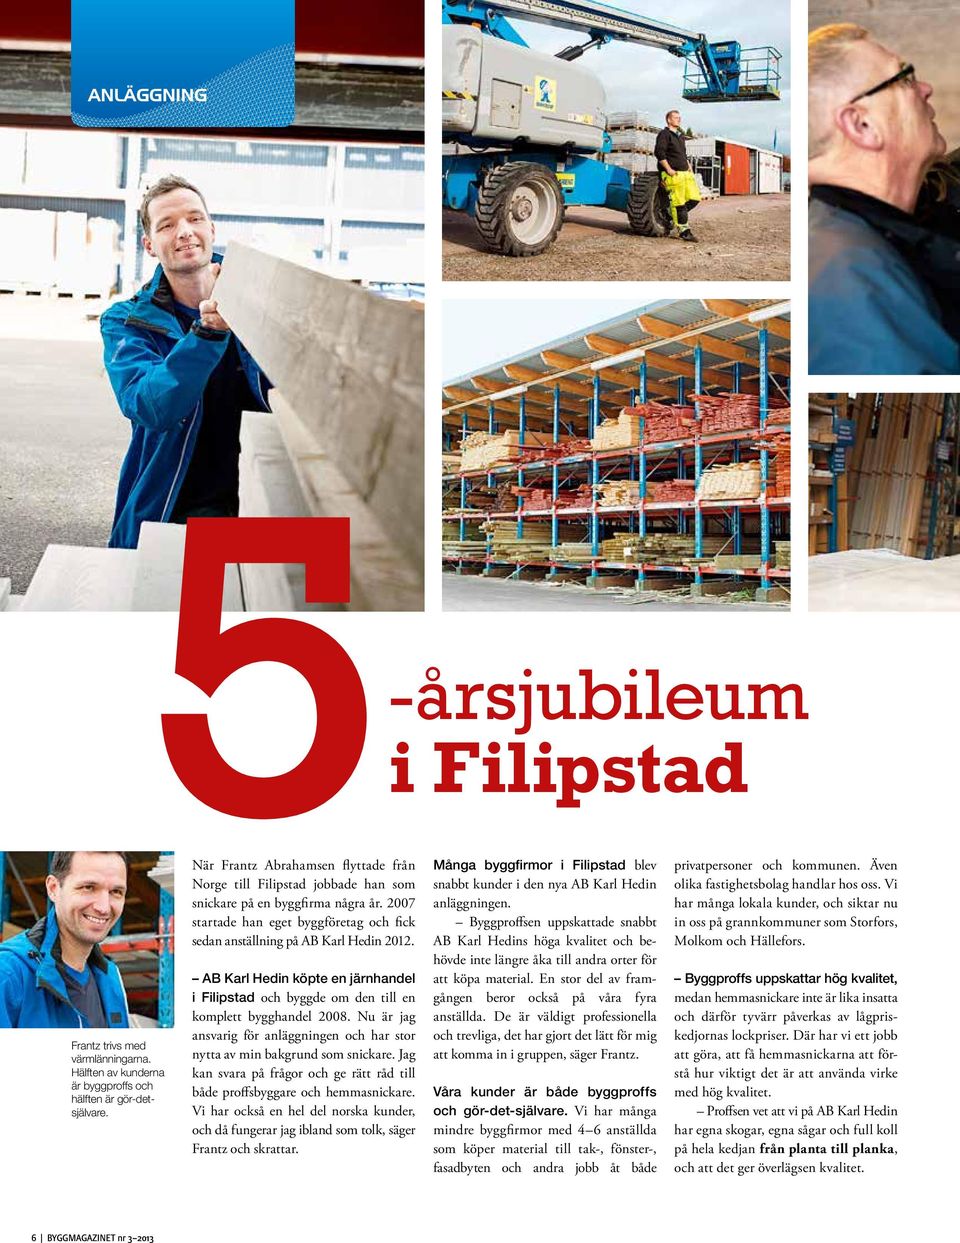 AB Karl Hedin köpte en järnhandel i Filipstad och byggde om den till en komplett bygghandel 2008. Nu är jag ansvarig för anläggningen och har stor nytta av min bakgrund som snickare.